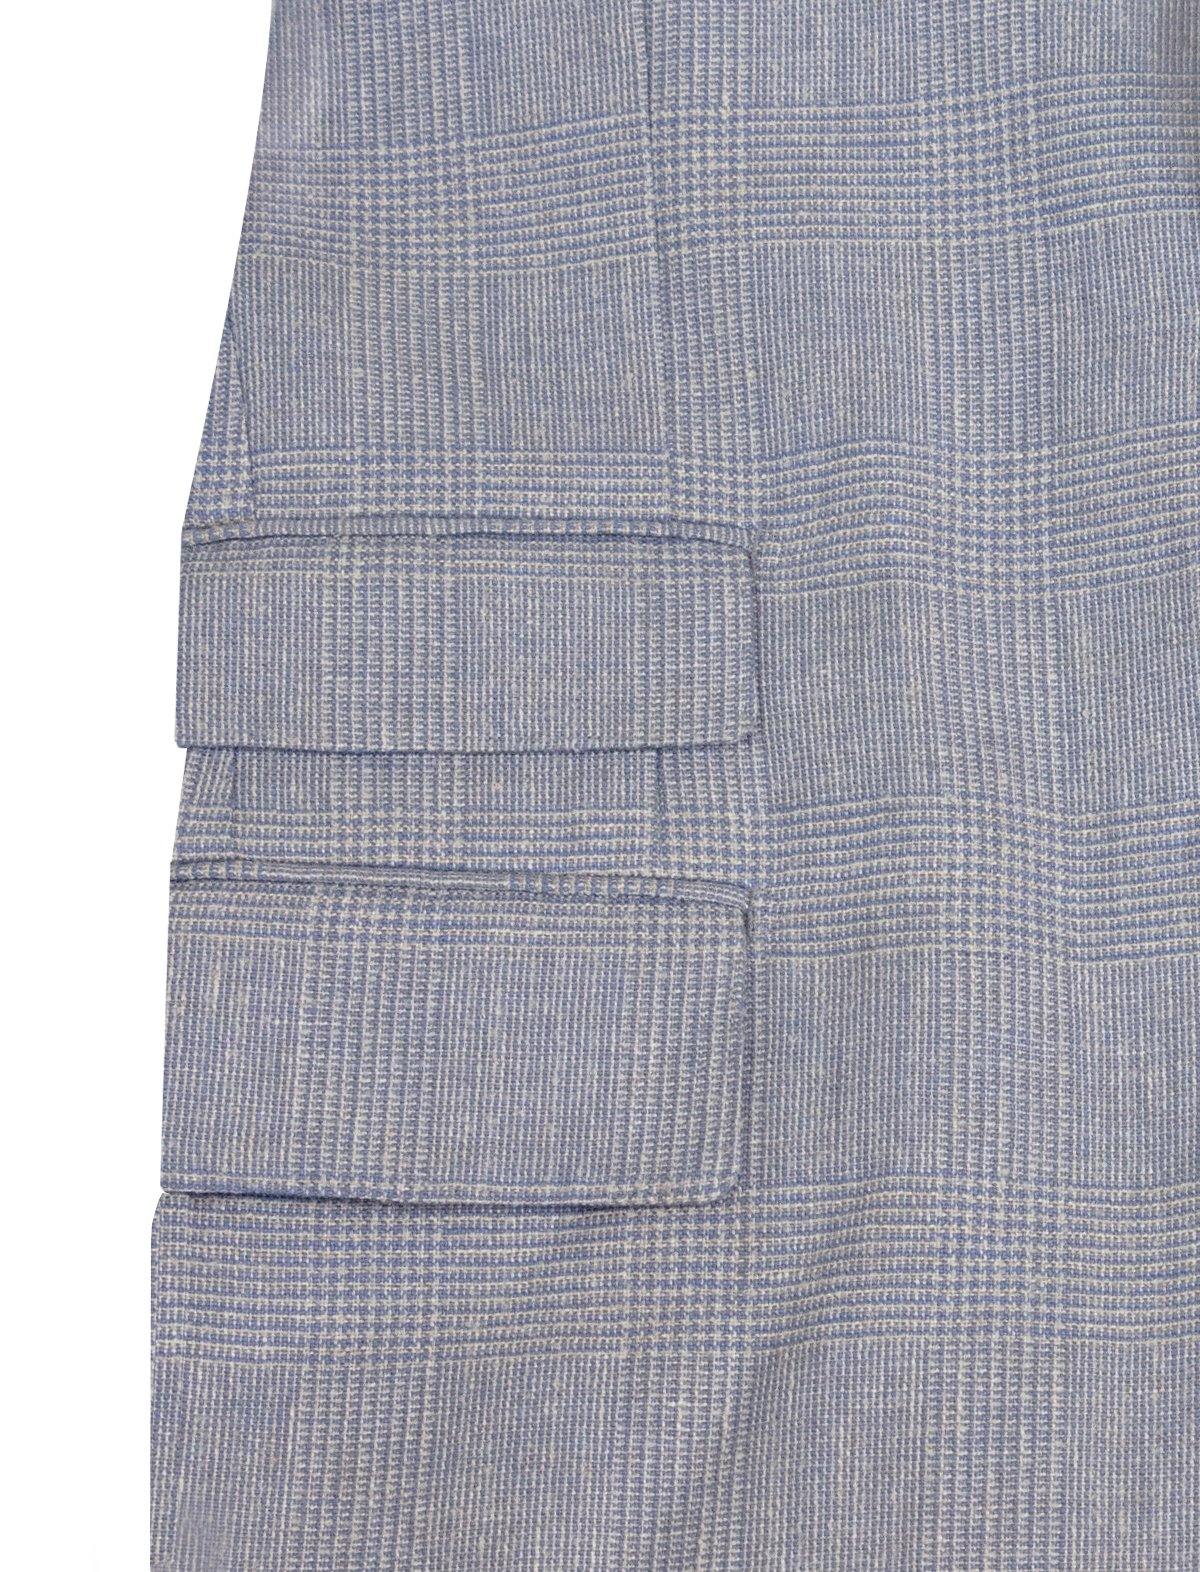 GABRIELE PASINI 2-Piece Linen Blend Suit in Blue Glen Check Print | CLOSET Singapore